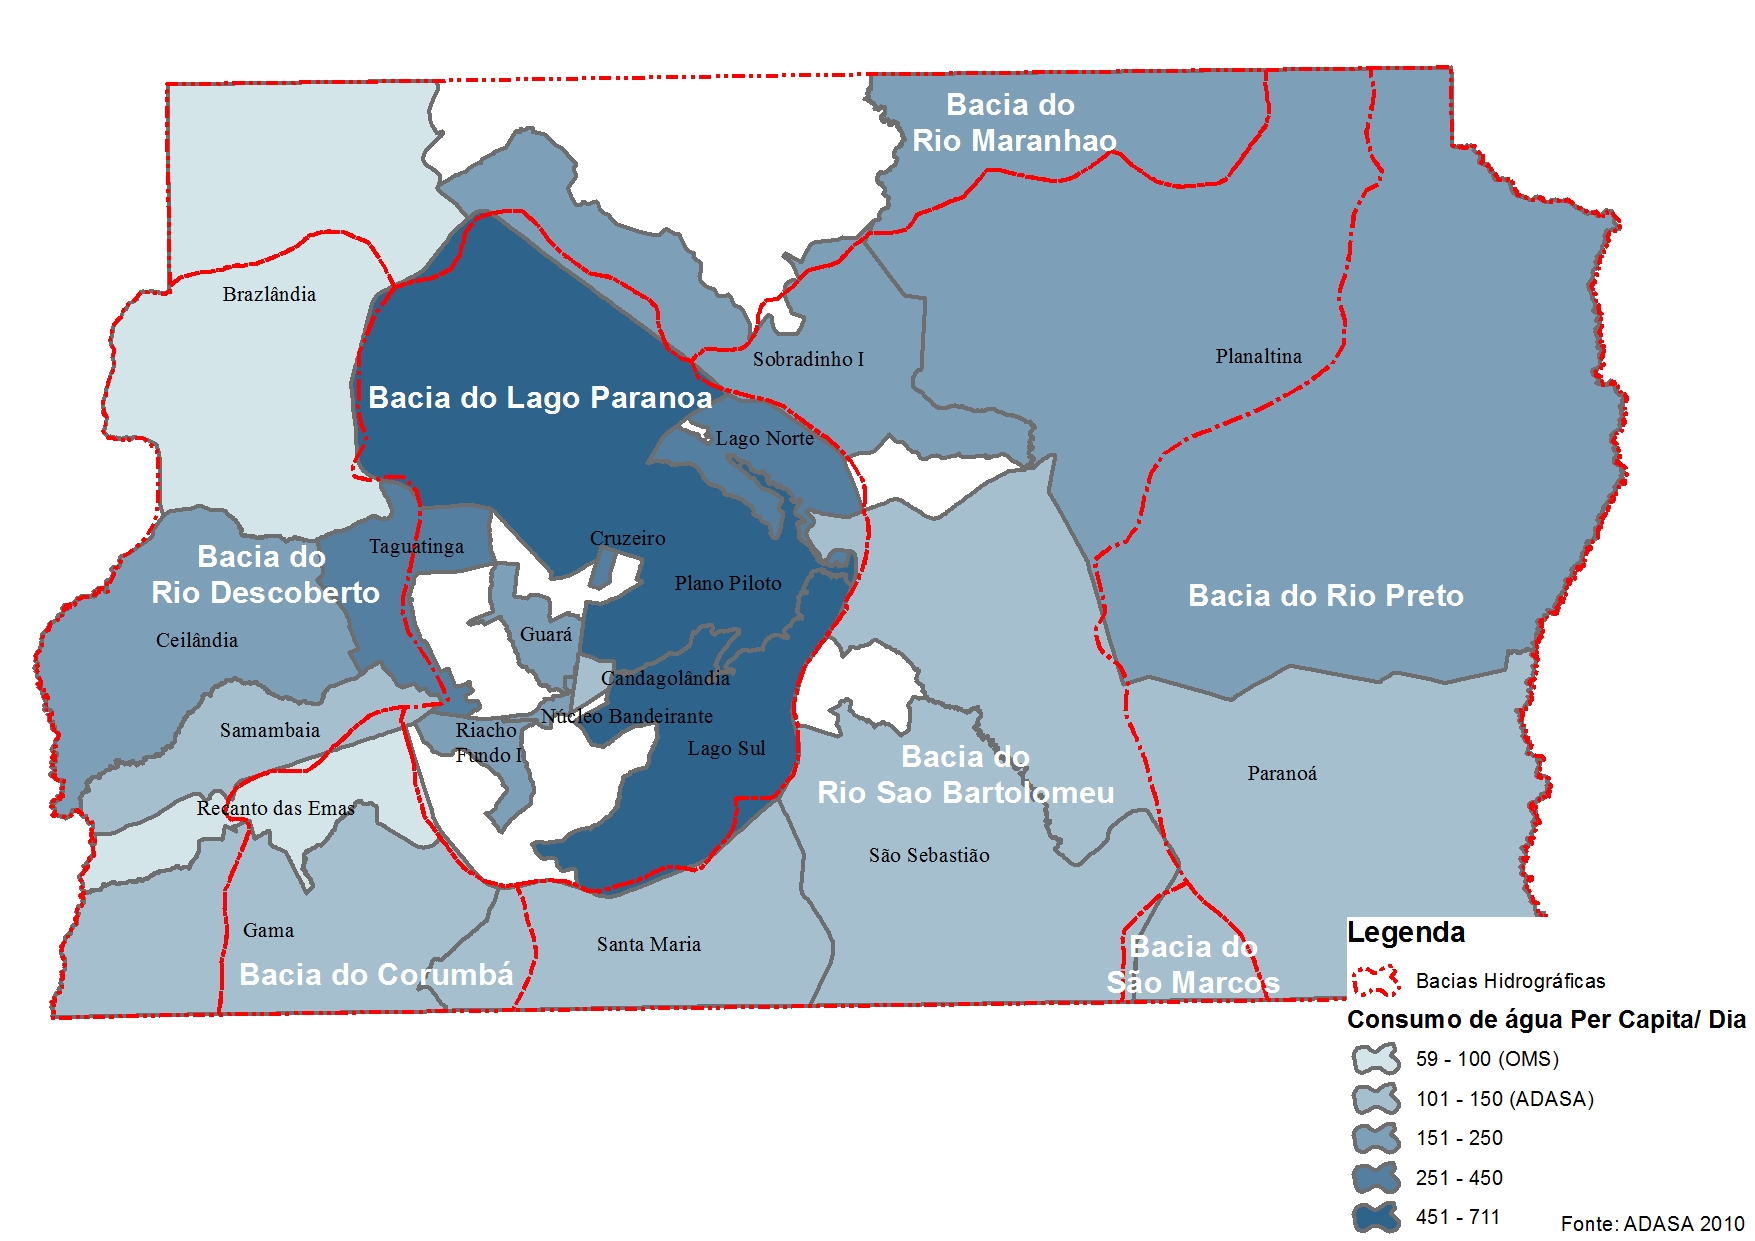 Mapa de consumo per capita por RA e a divisão das bacias hidrográficas. Fonte dos dados: Plano de Gerenciamento Integrado dos Recursos Hídricos do Distrito Federal – PGIRH/ ADASA.